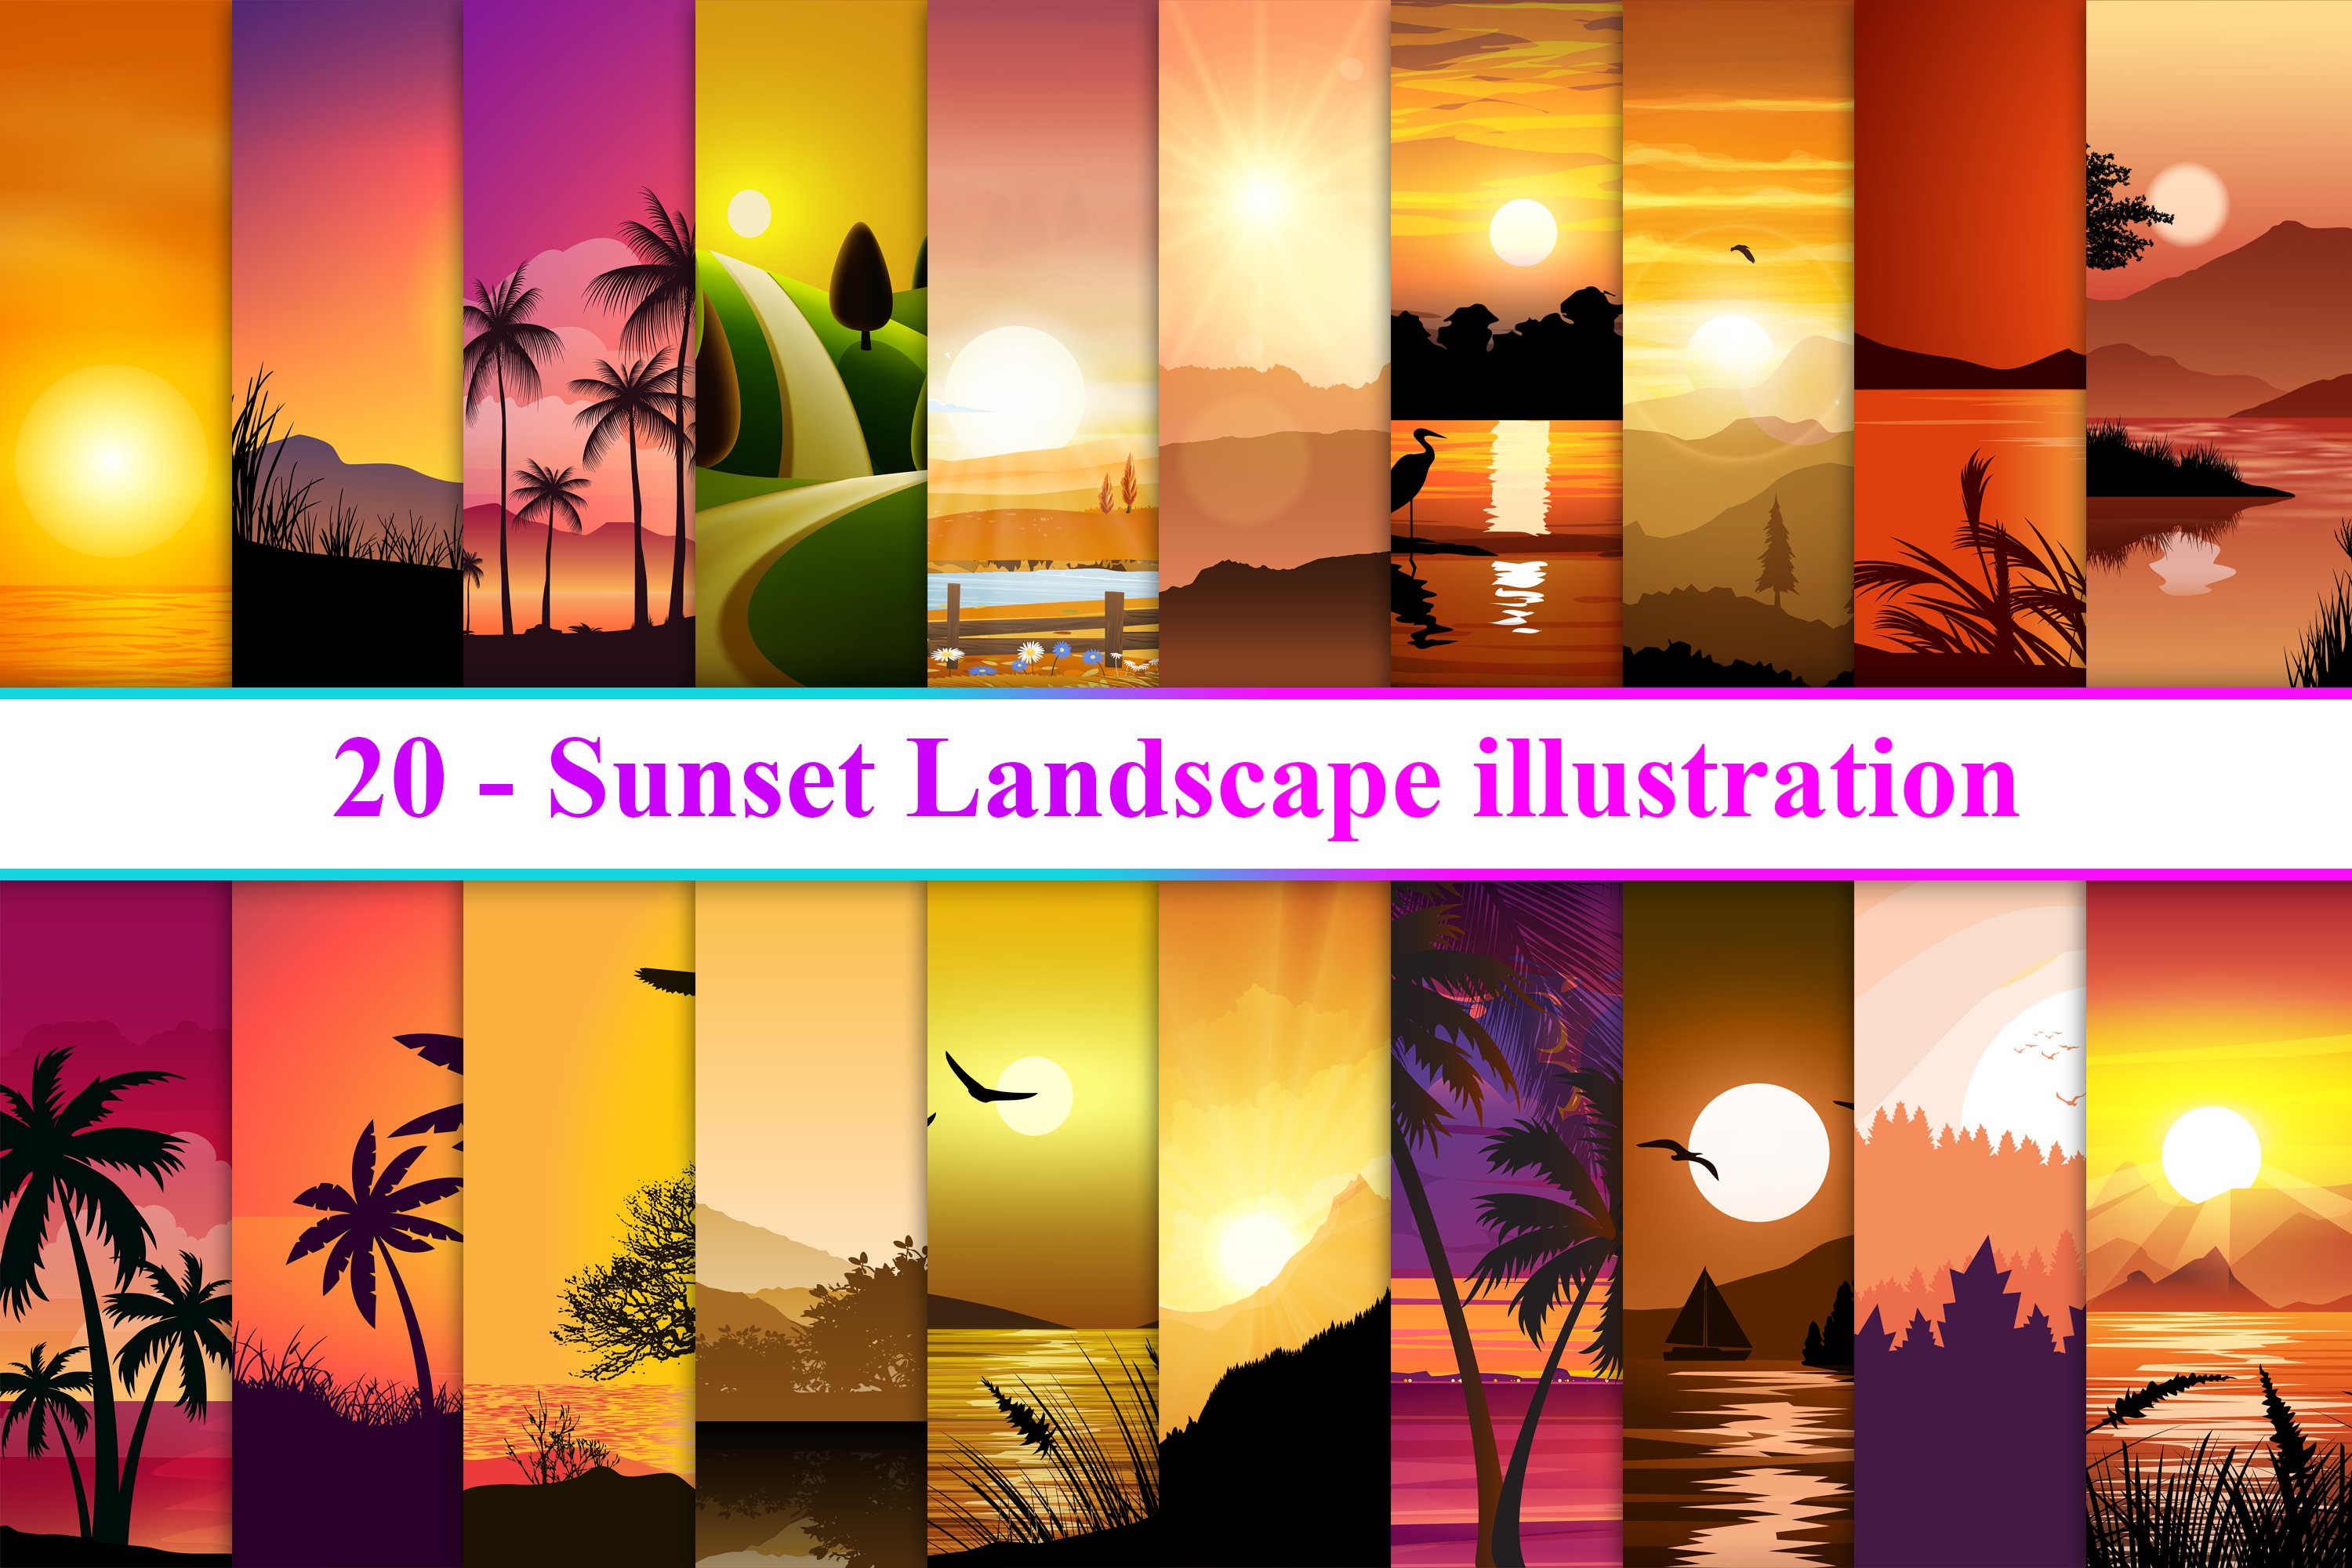 Sunset Landscape cover image.